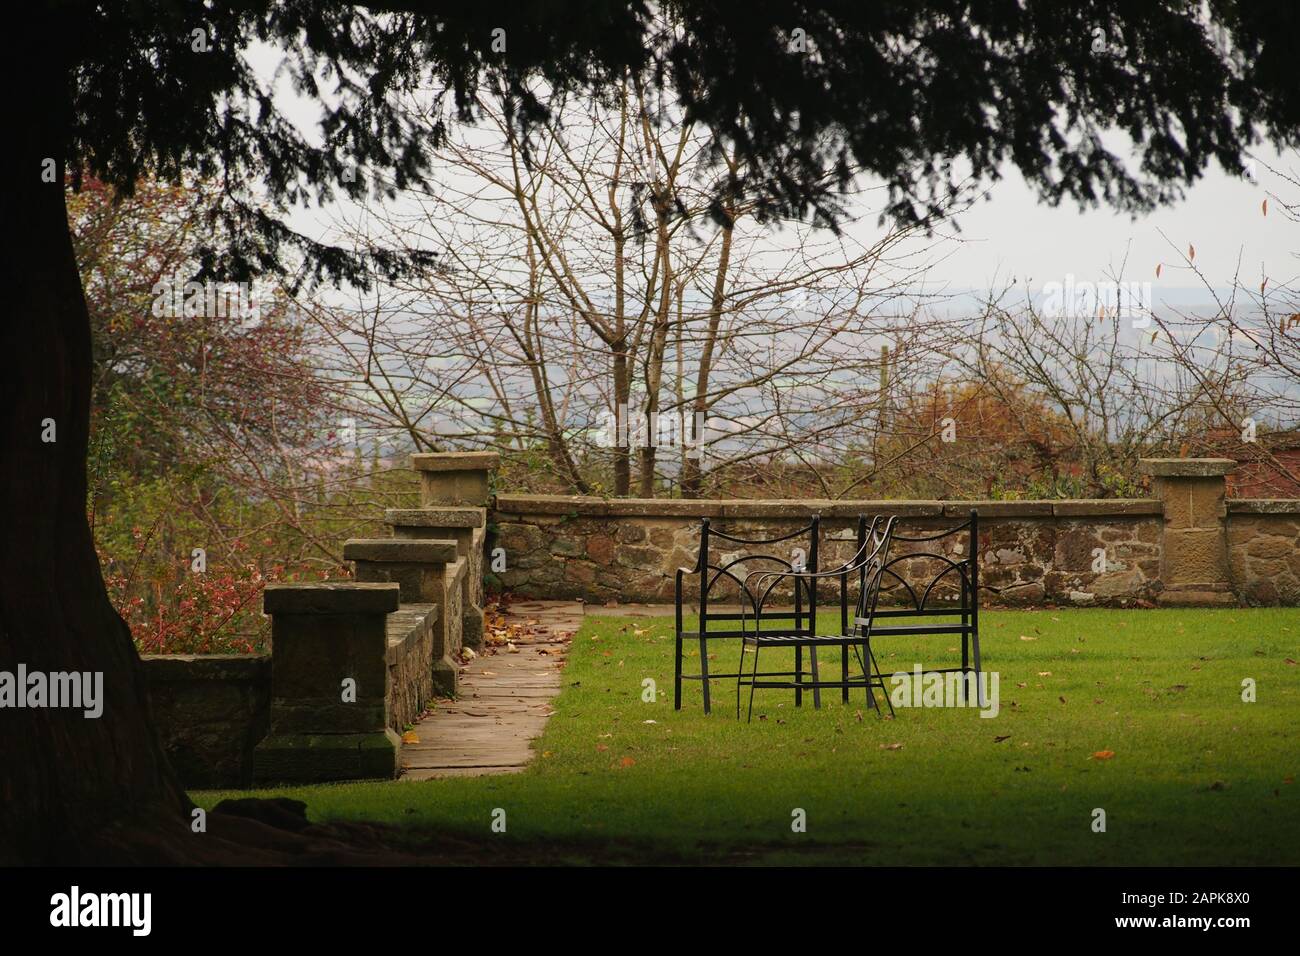 Una vista en un jardín con una pared de piedra baja rodea y sillas de hierro jardín en el césped de hierba todo enmarcado por un árbol grande y maduro de hoja perenne Foto de stock